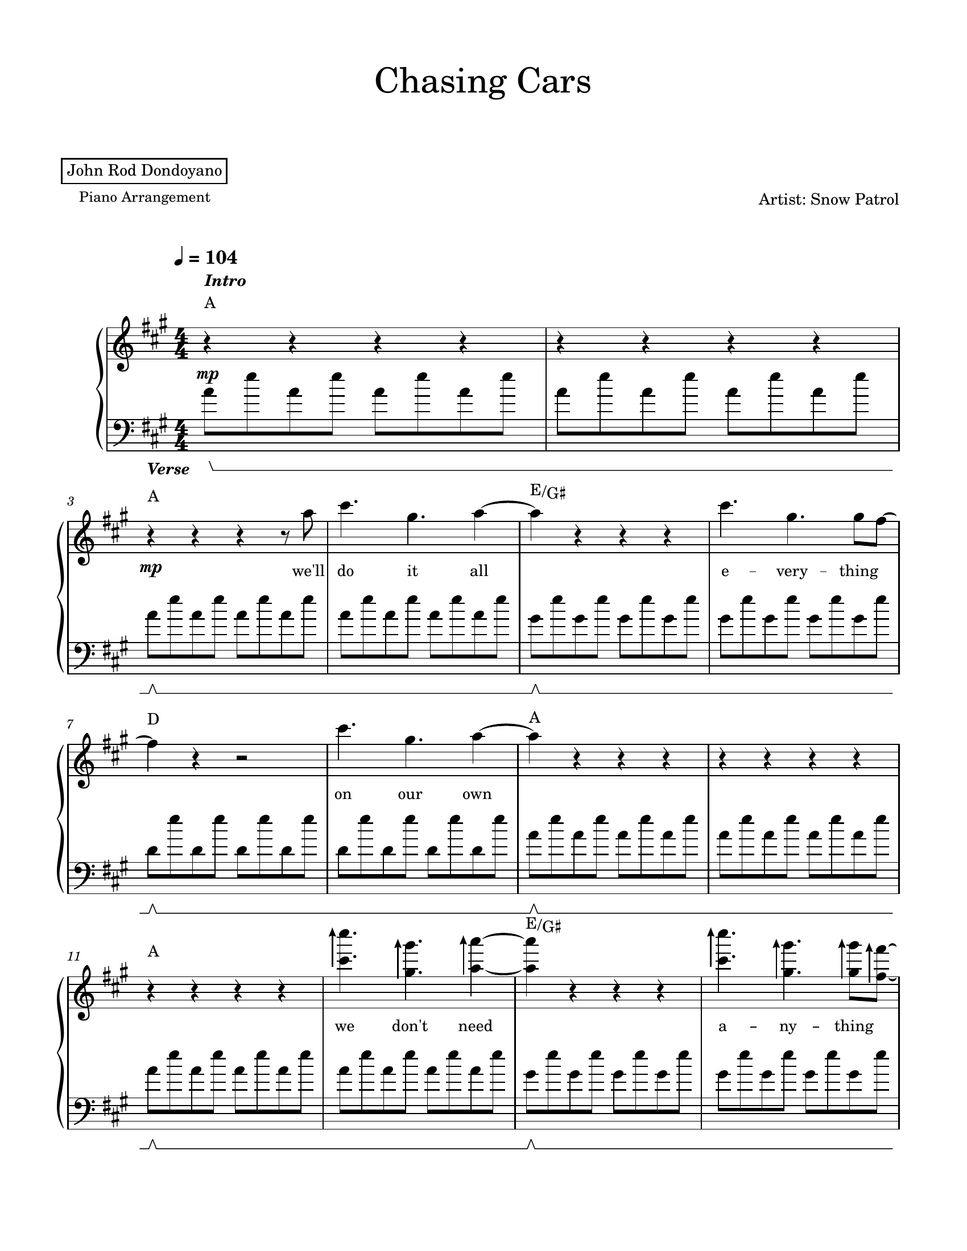 Snow Patrol - Chasing Cars (PIANO SHEET) Sheets by John Rod Dondoyano